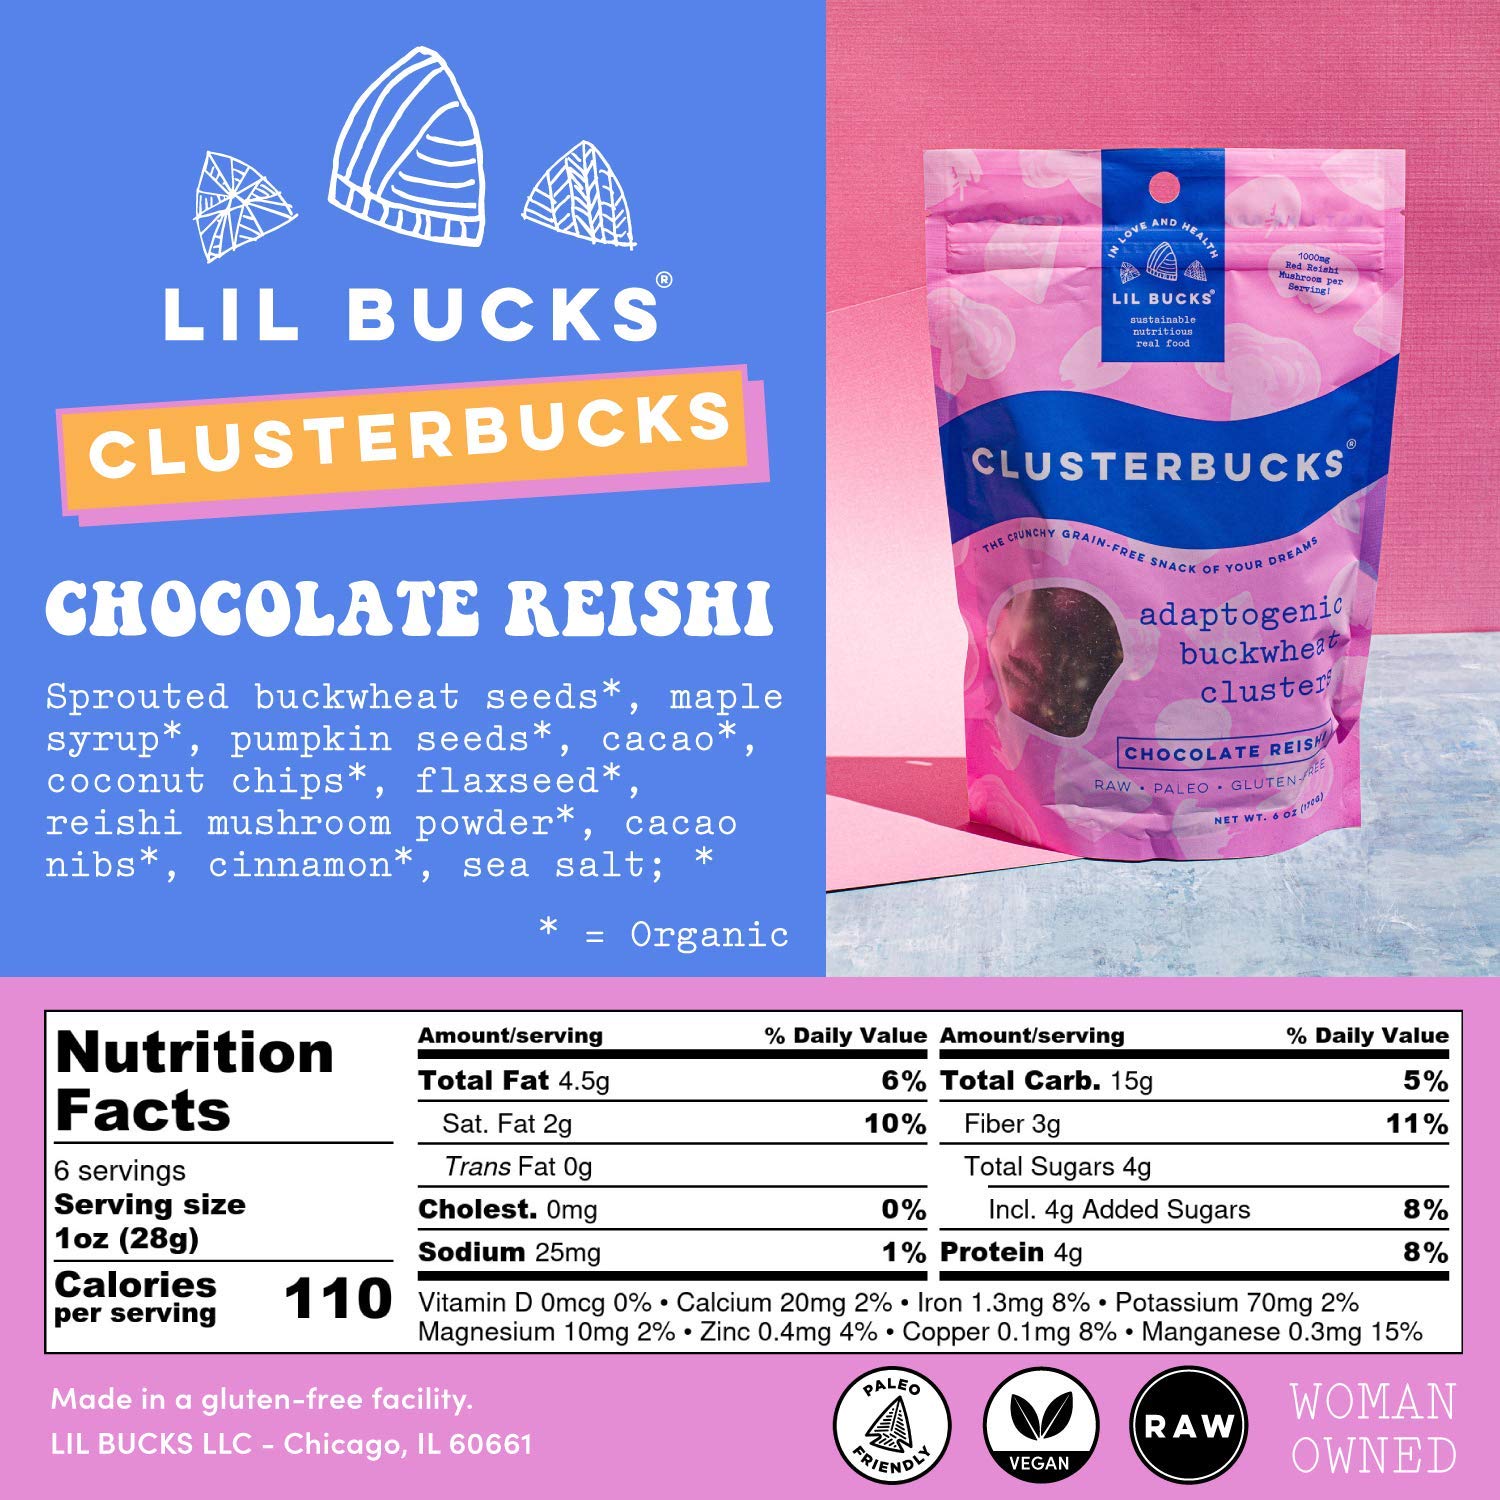 Lil Bucks Chocolate Sea Salt Clusterbucks - Multiverse